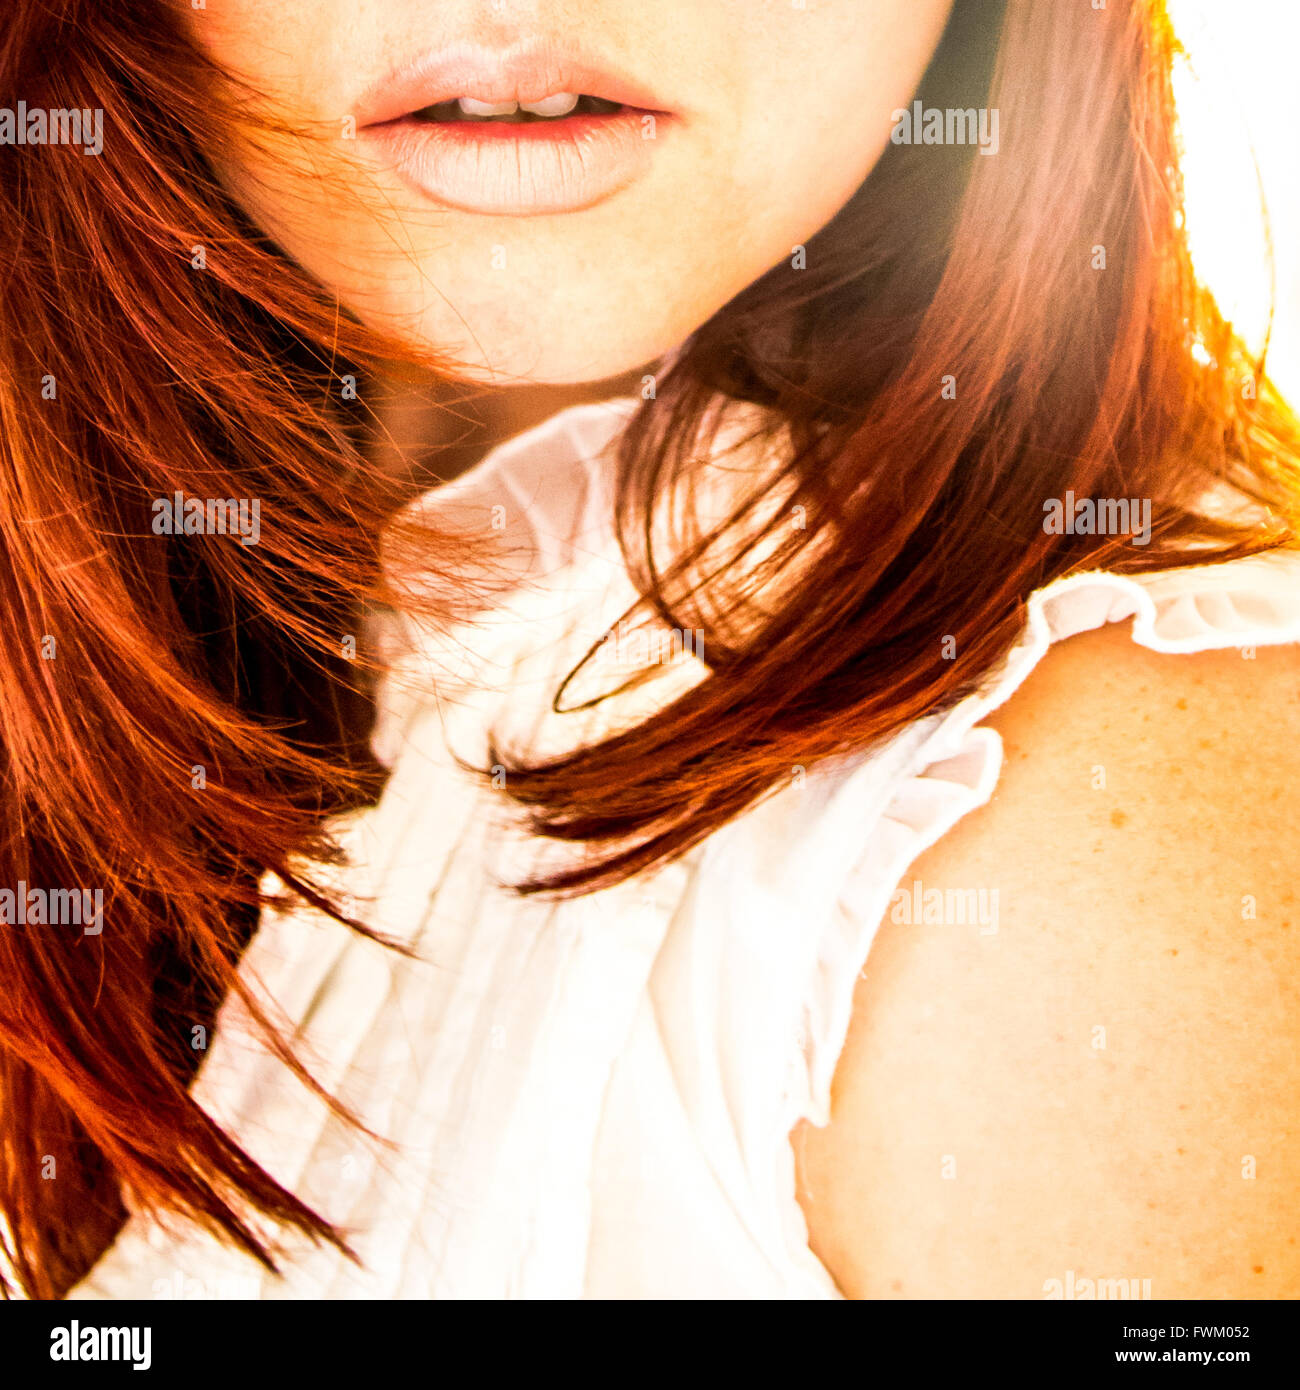 Immagine ritagliata di donna con capelli castani Foto Stock